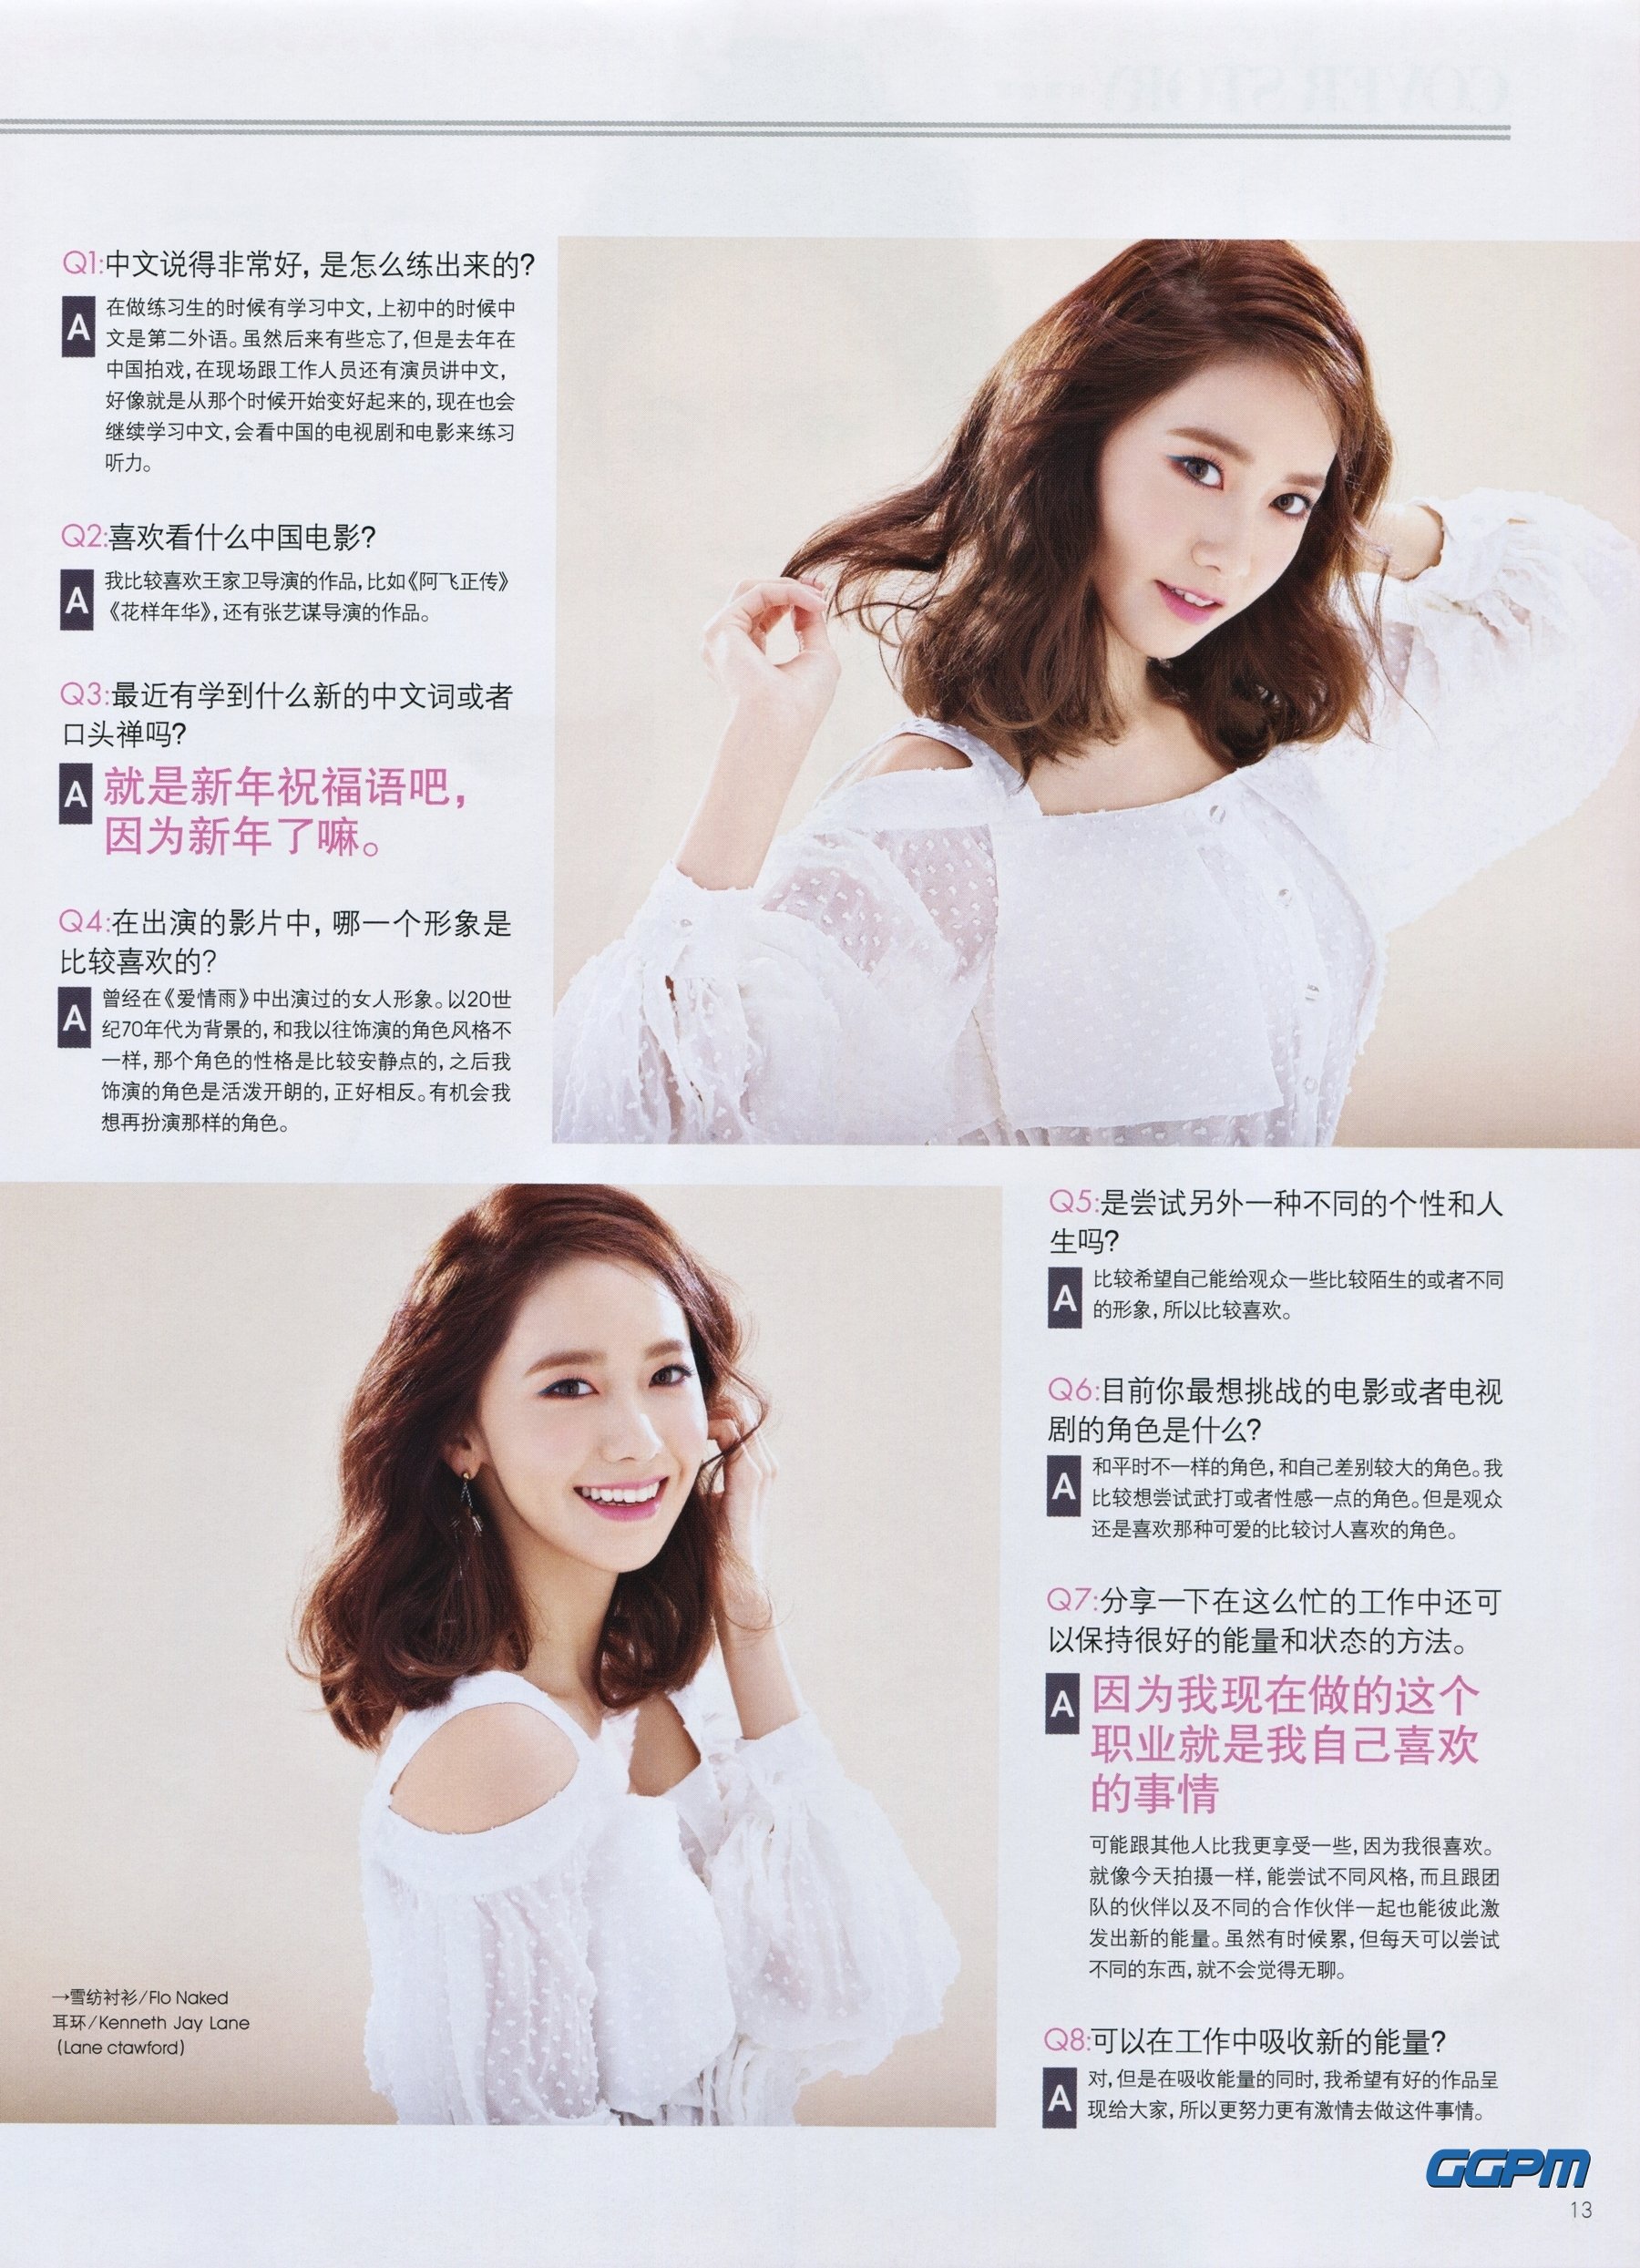 [PIC][17-02-2016]YoonA xuất hiện trên trang bìa ấn phẩm tháng 3 của tạp chí Trung Quốc - "Ray Li" QqB8_TKsnp-3000x3000